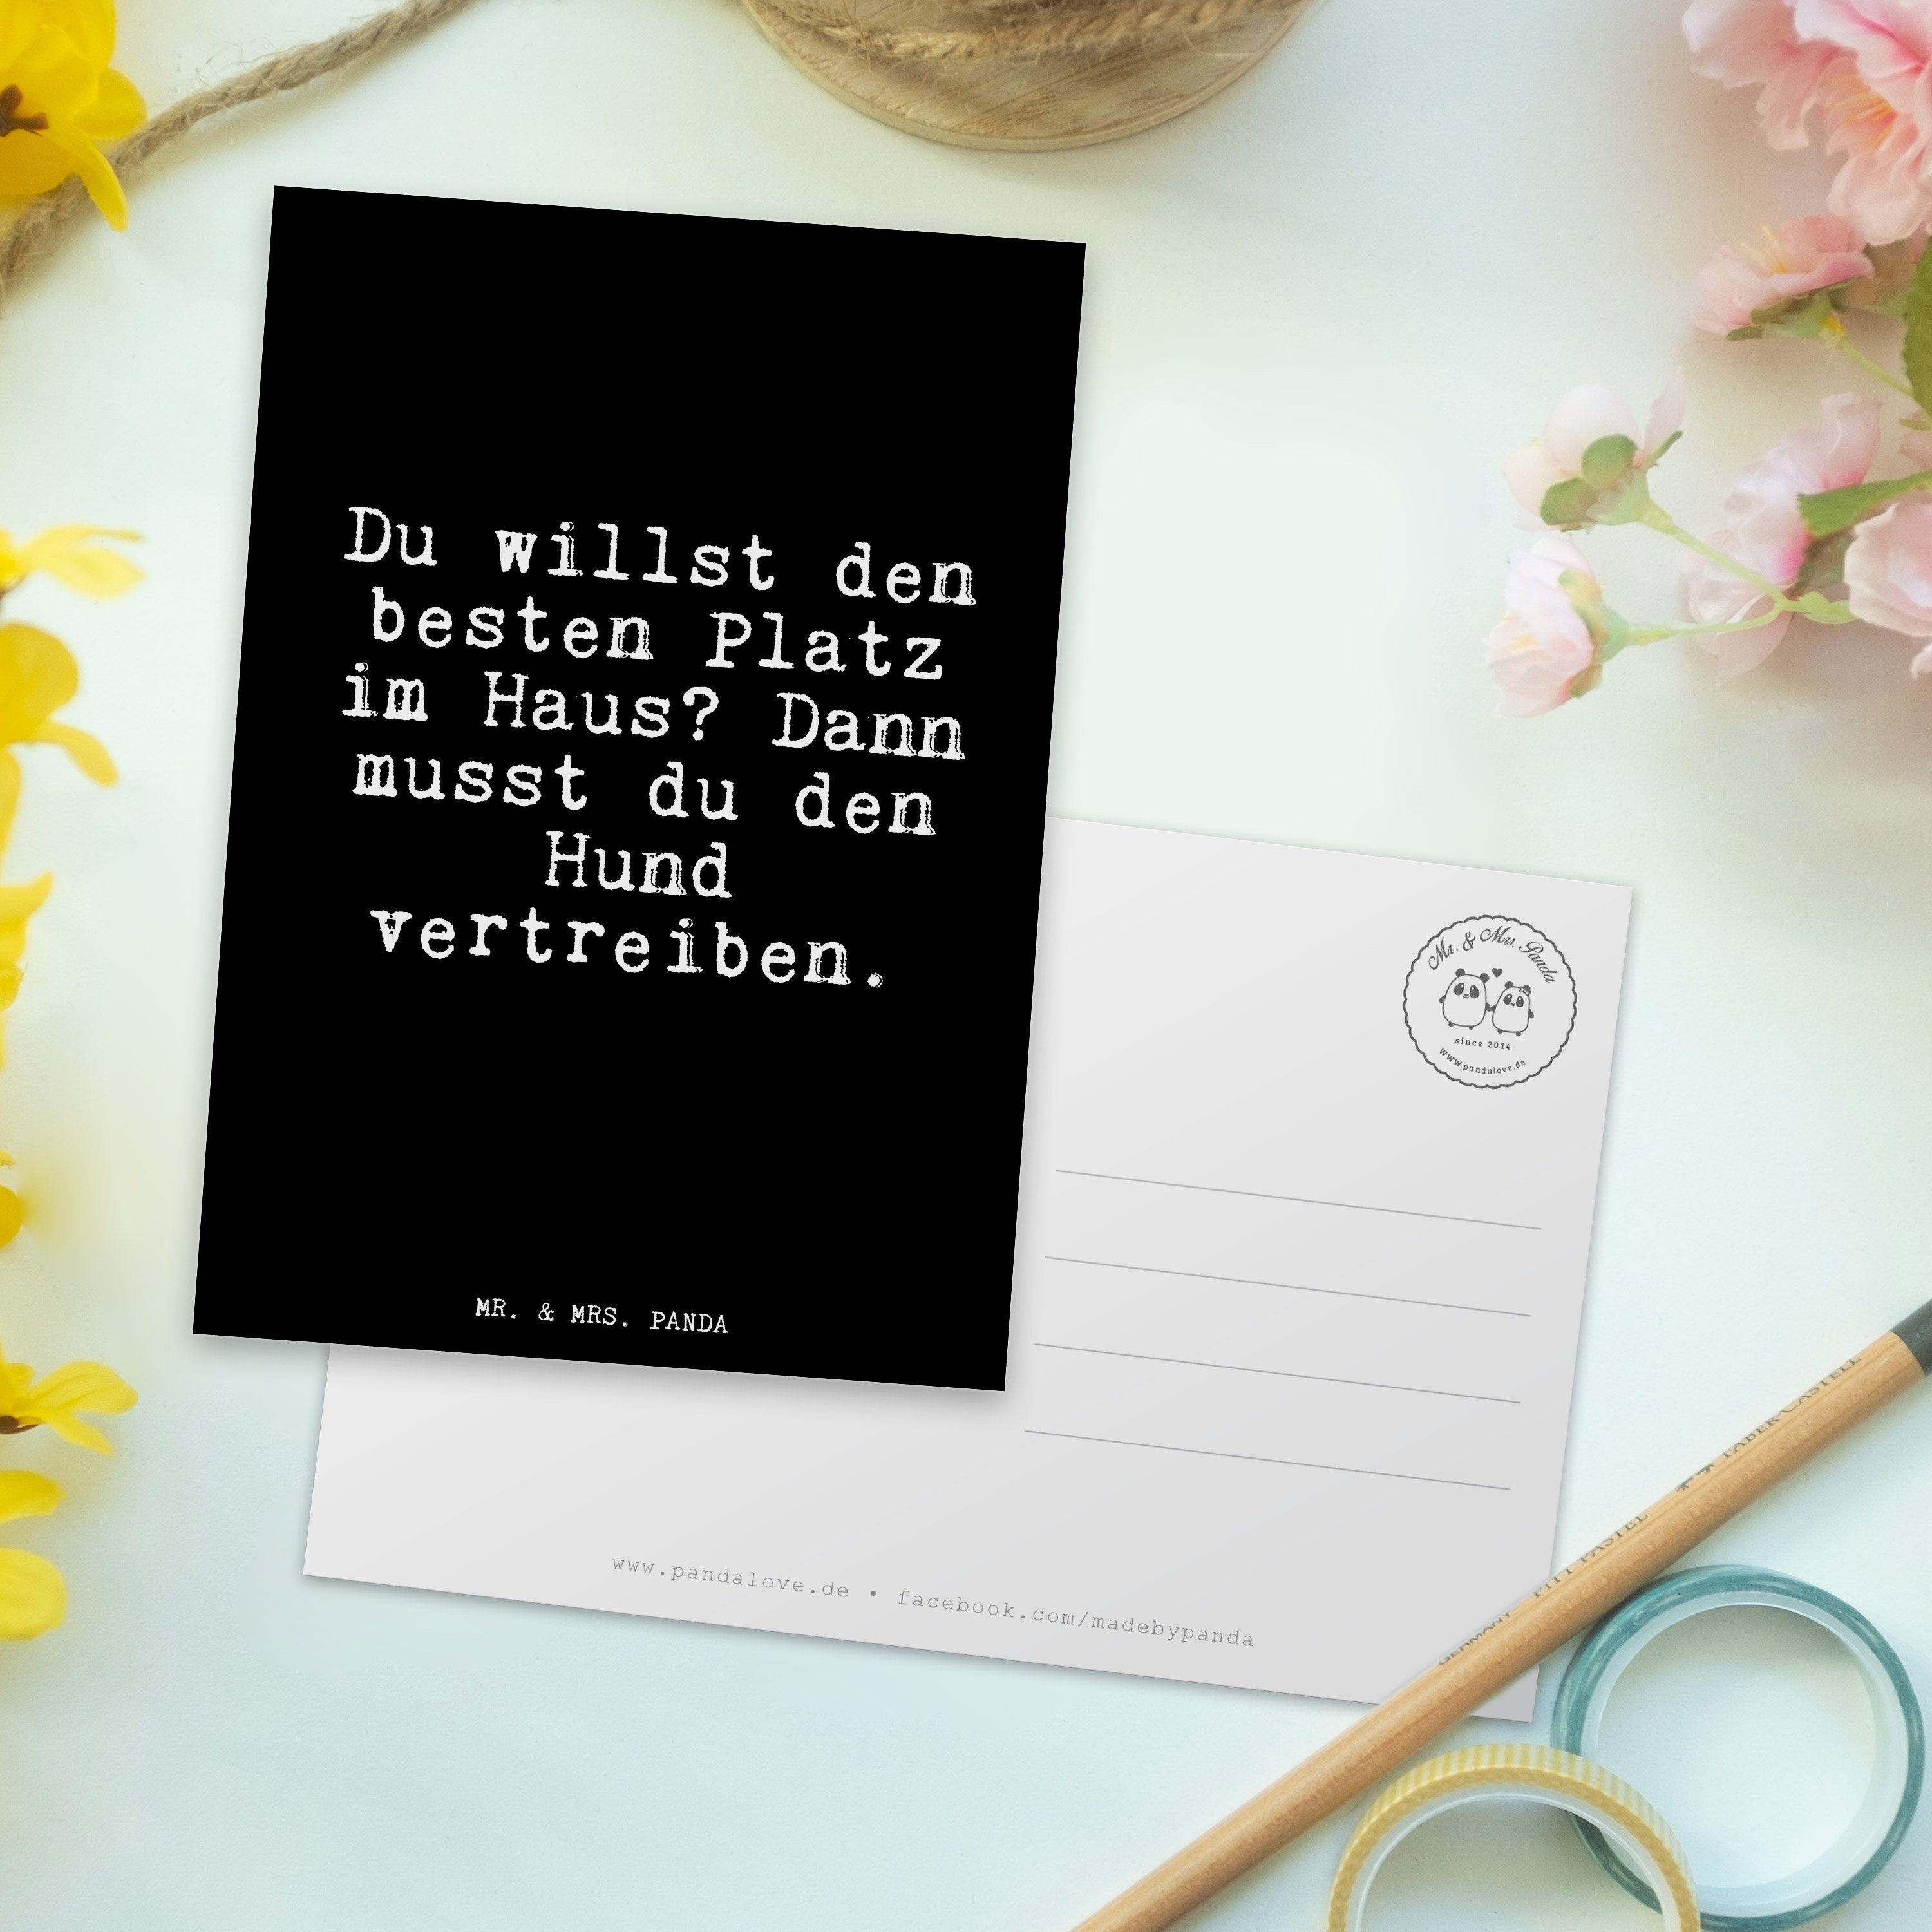 Glizer Panda den Mr. & Geschenk, Spruch, S - Mrs. willst - Schwarz besten... Postkarte Spruch Du